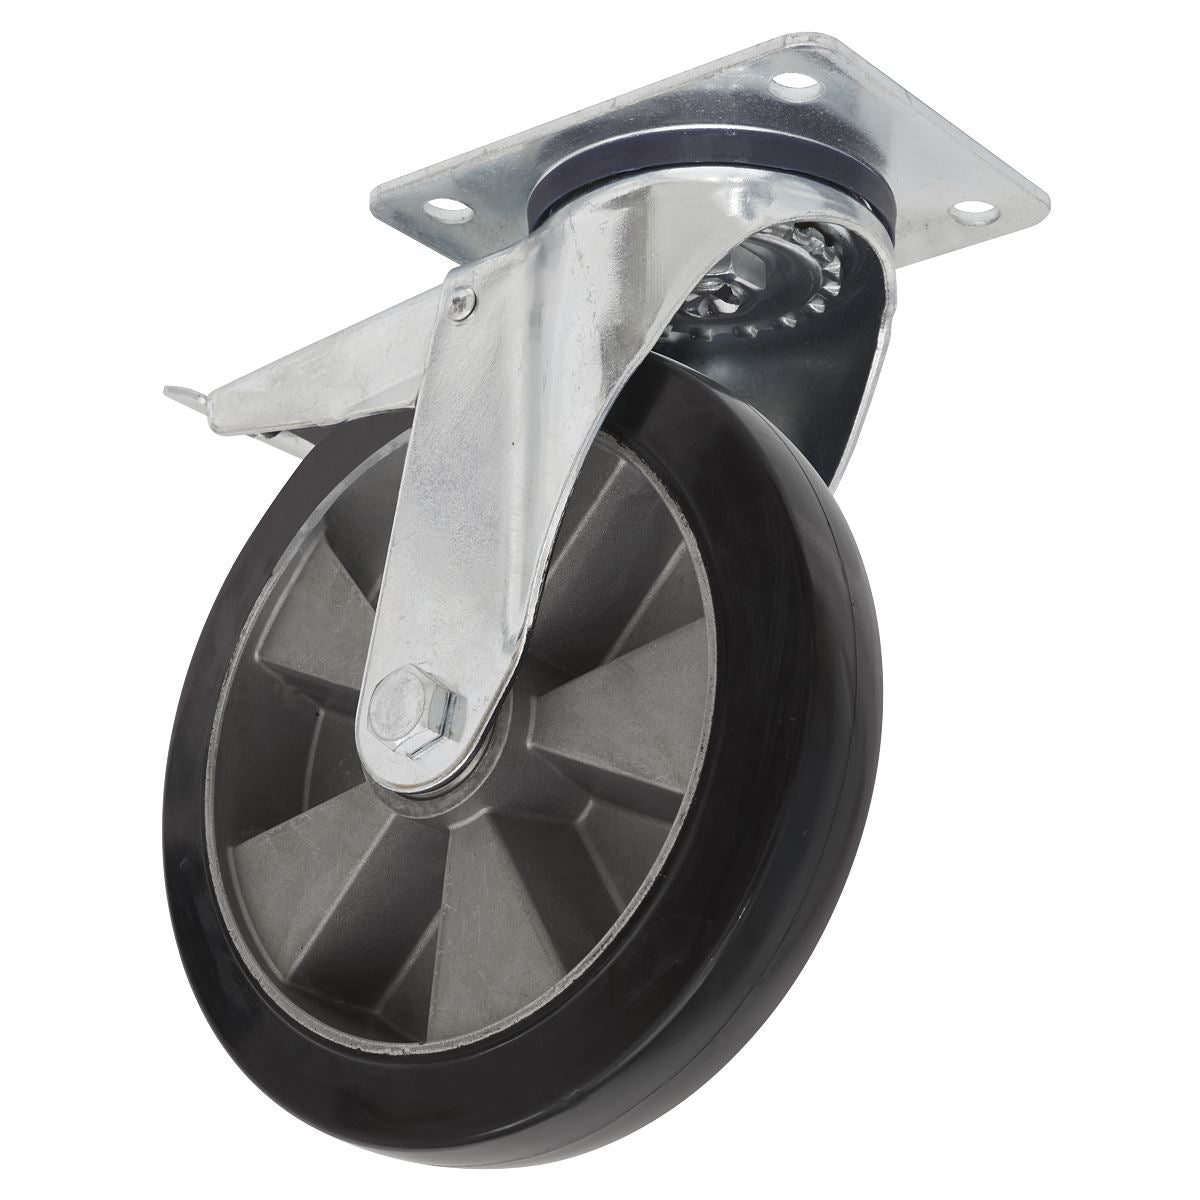 Sealey Heavy-Duty Rubber Castor Wheel Swivel with Total Lock Ø200mm - Trade